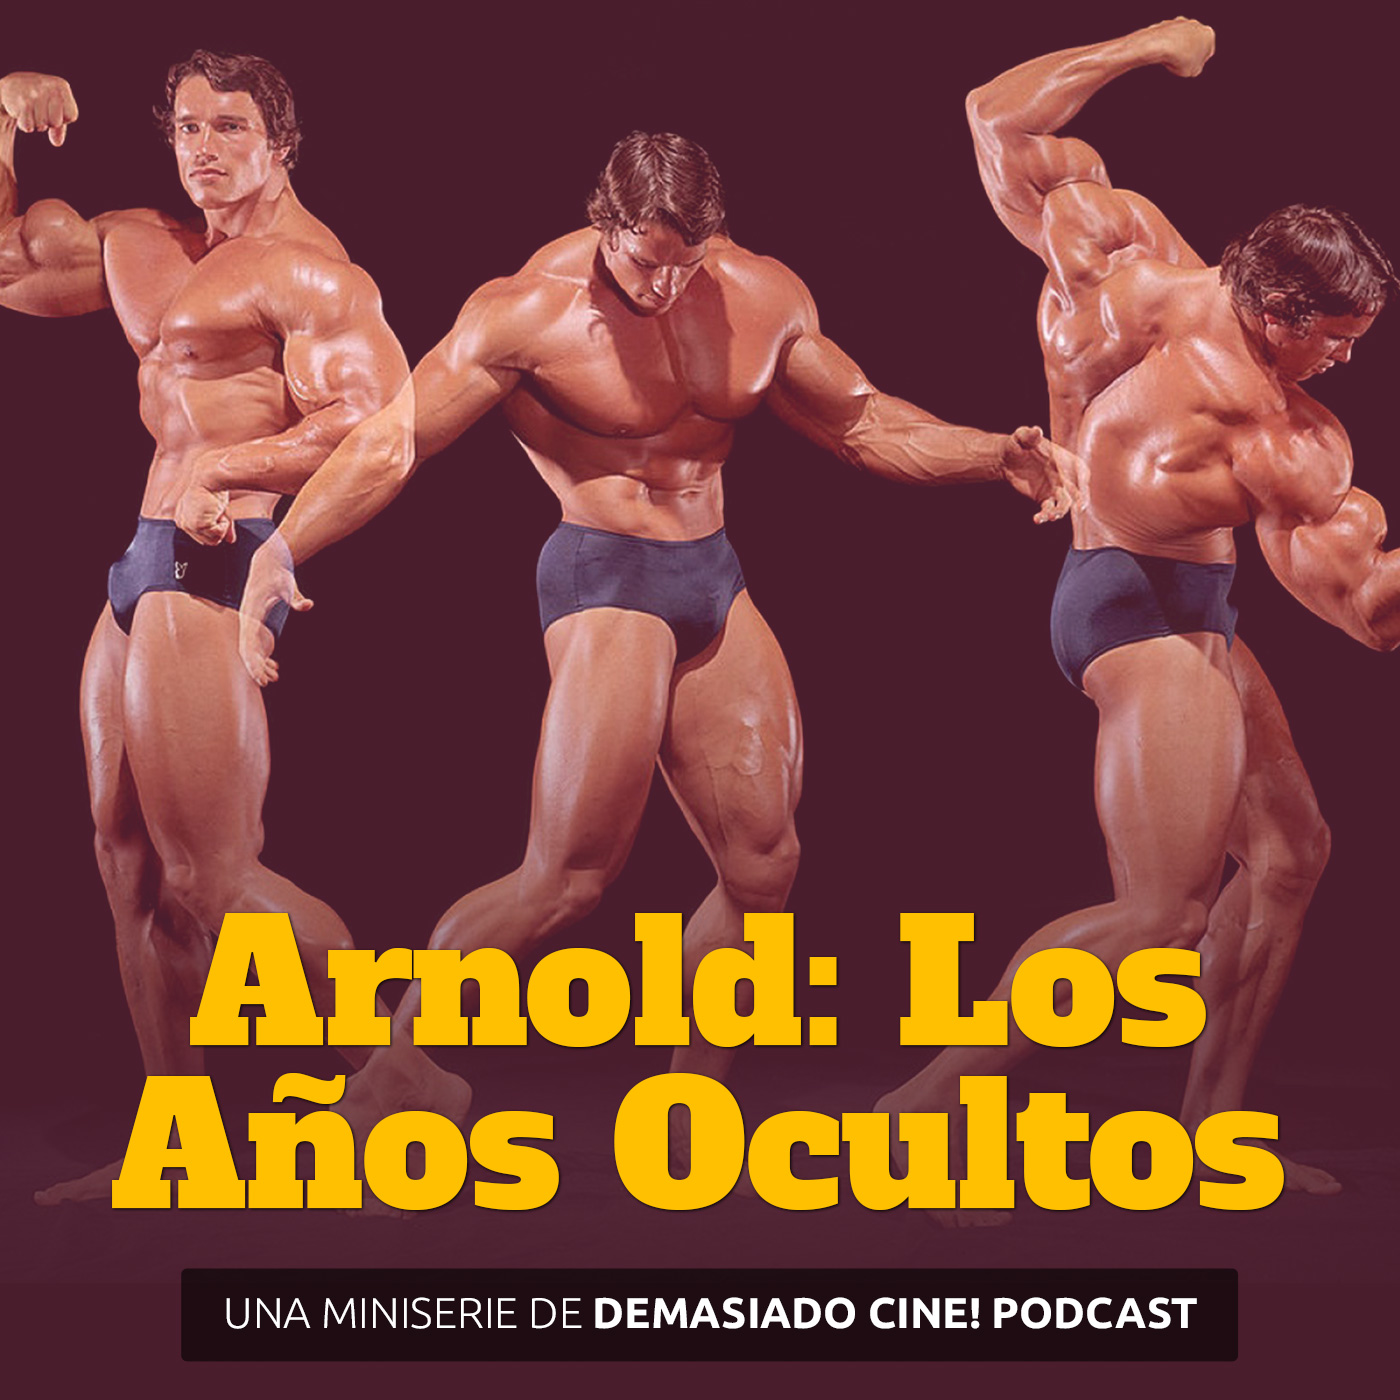 Arnold: Los años ocultos